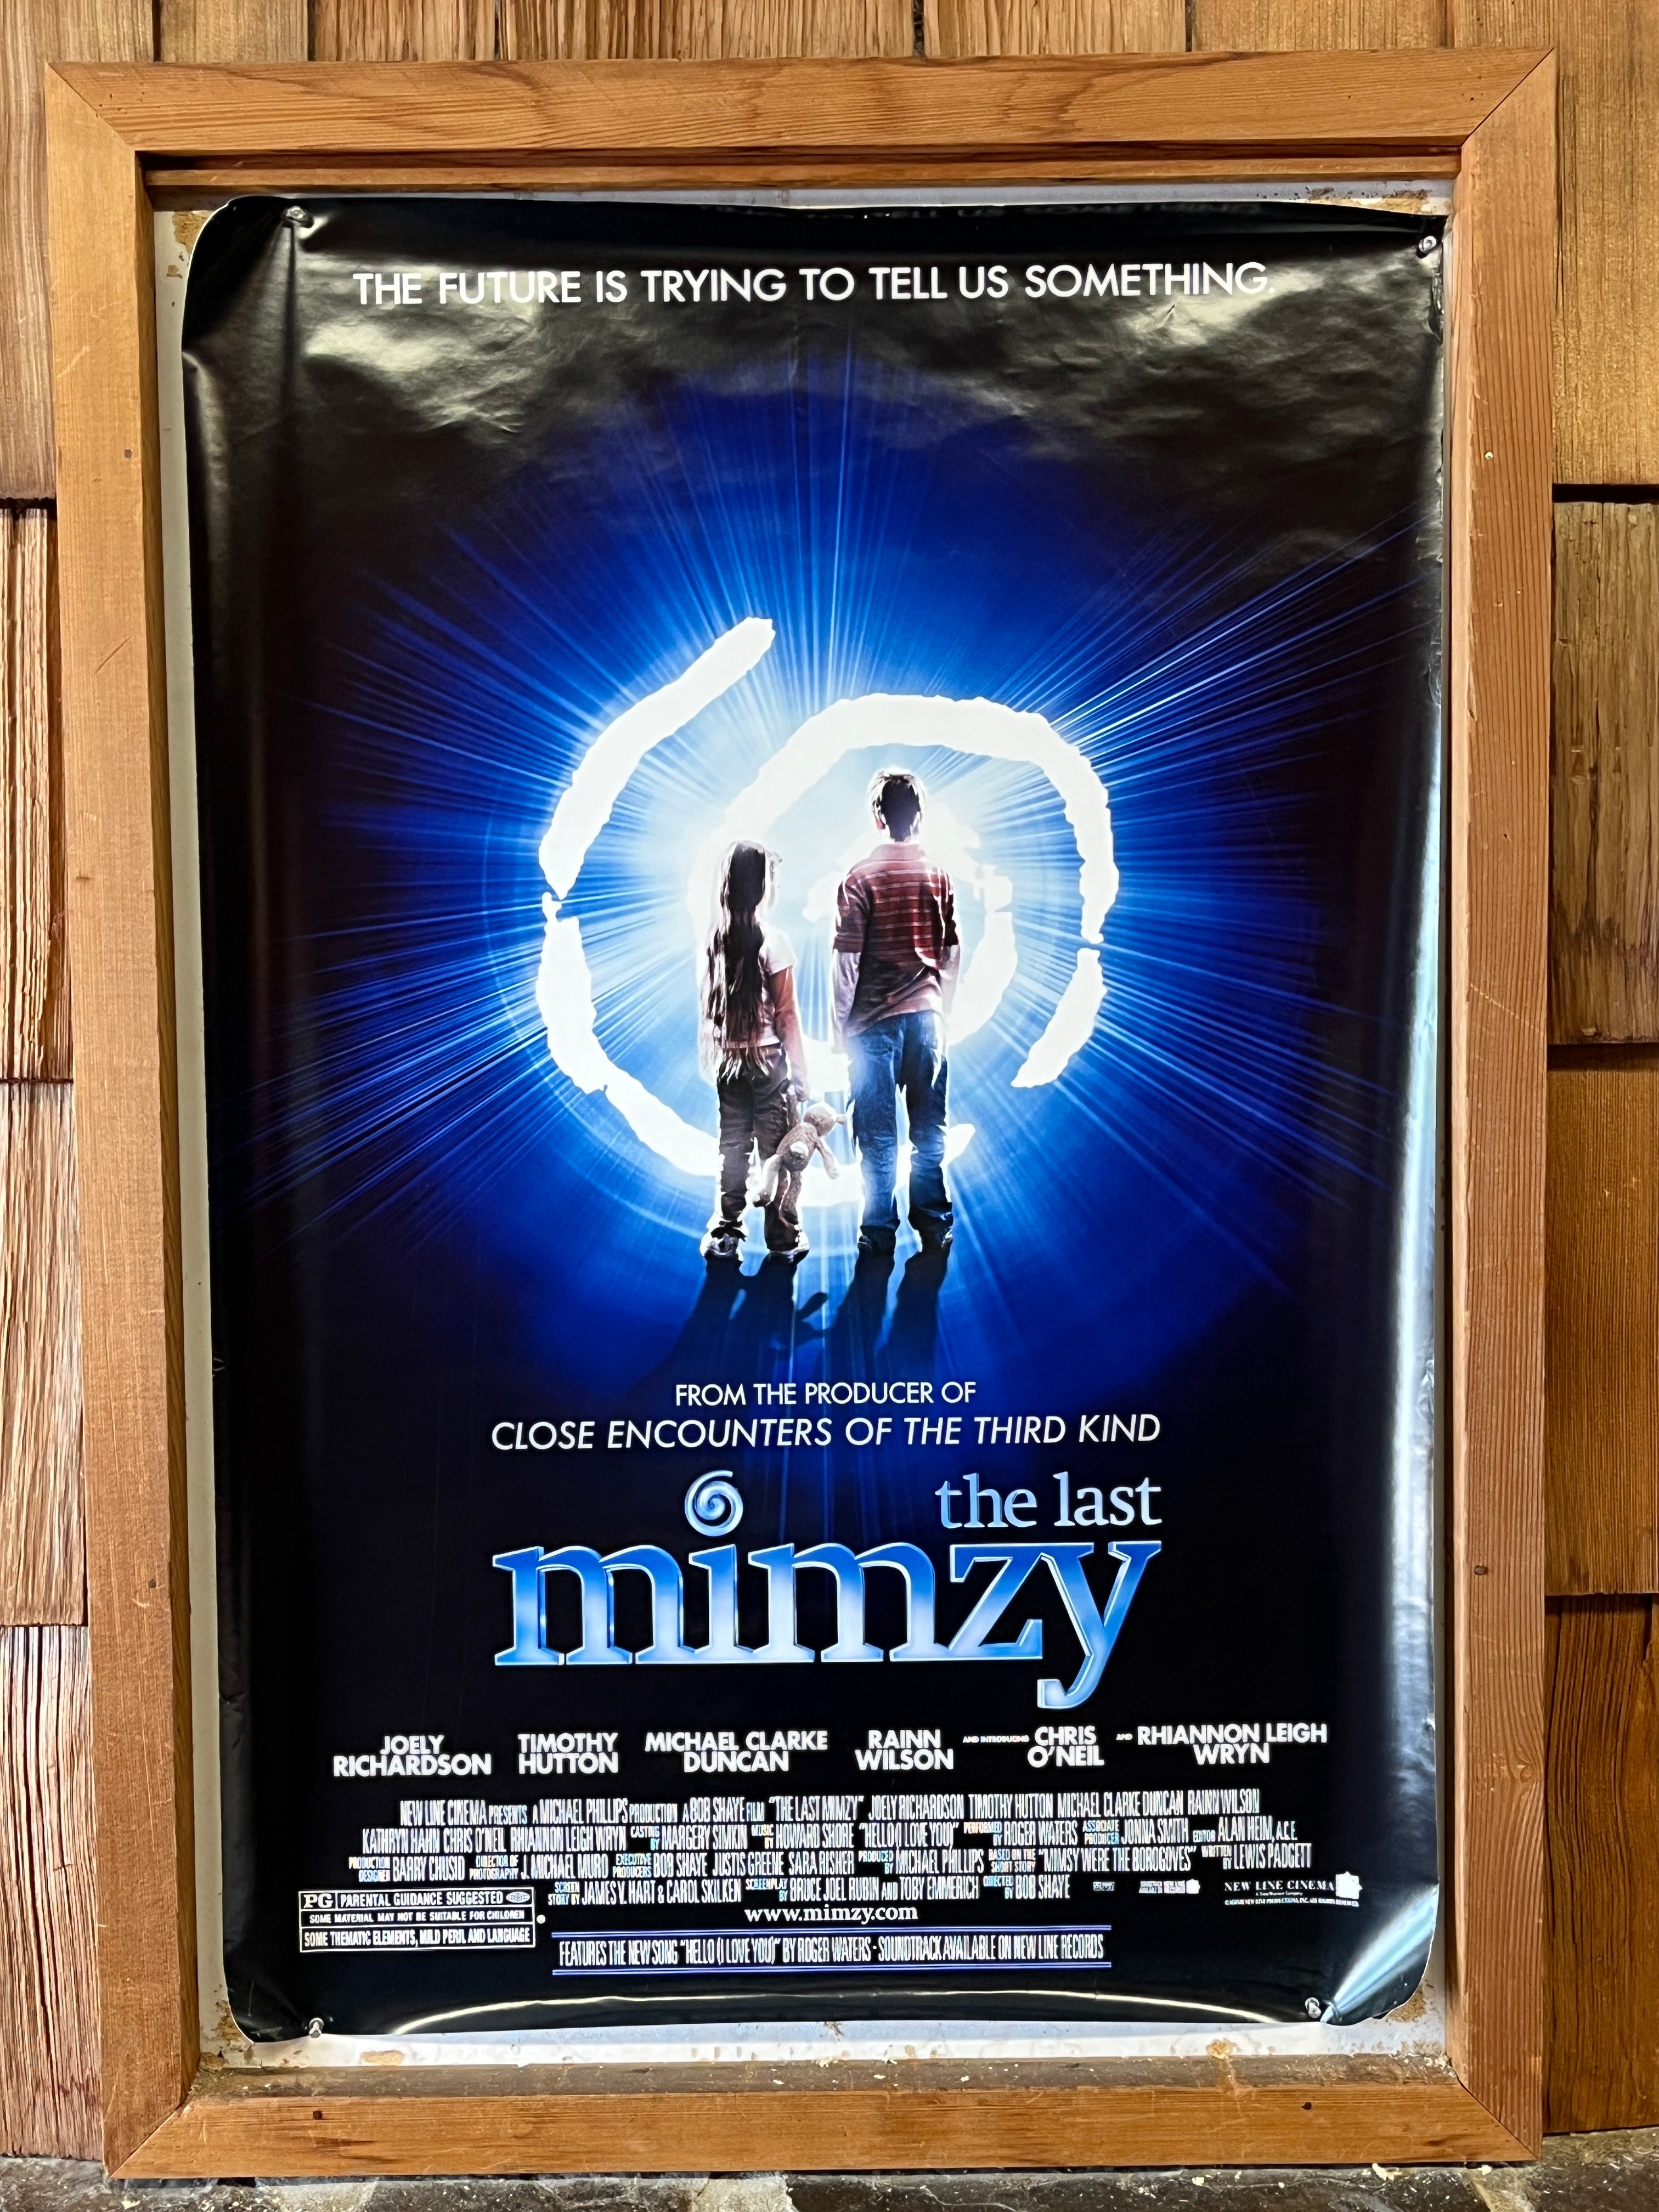 the last mimzy